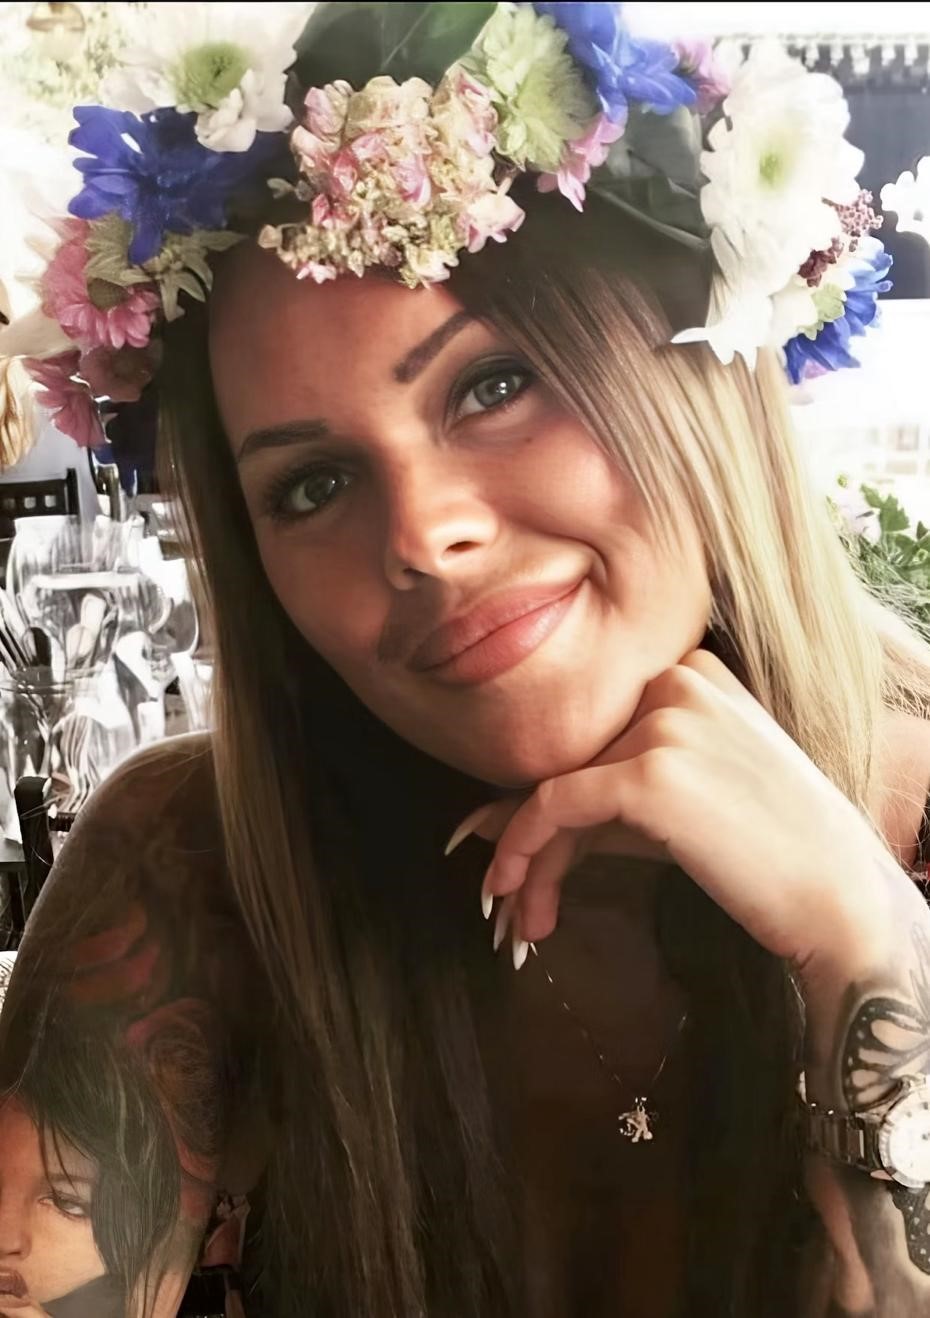 İsveç’ten İstanbul’a estetik ameliyatı olmak için gelen kadın ameliyattan 1 gün sonra hayatını kaybetti
